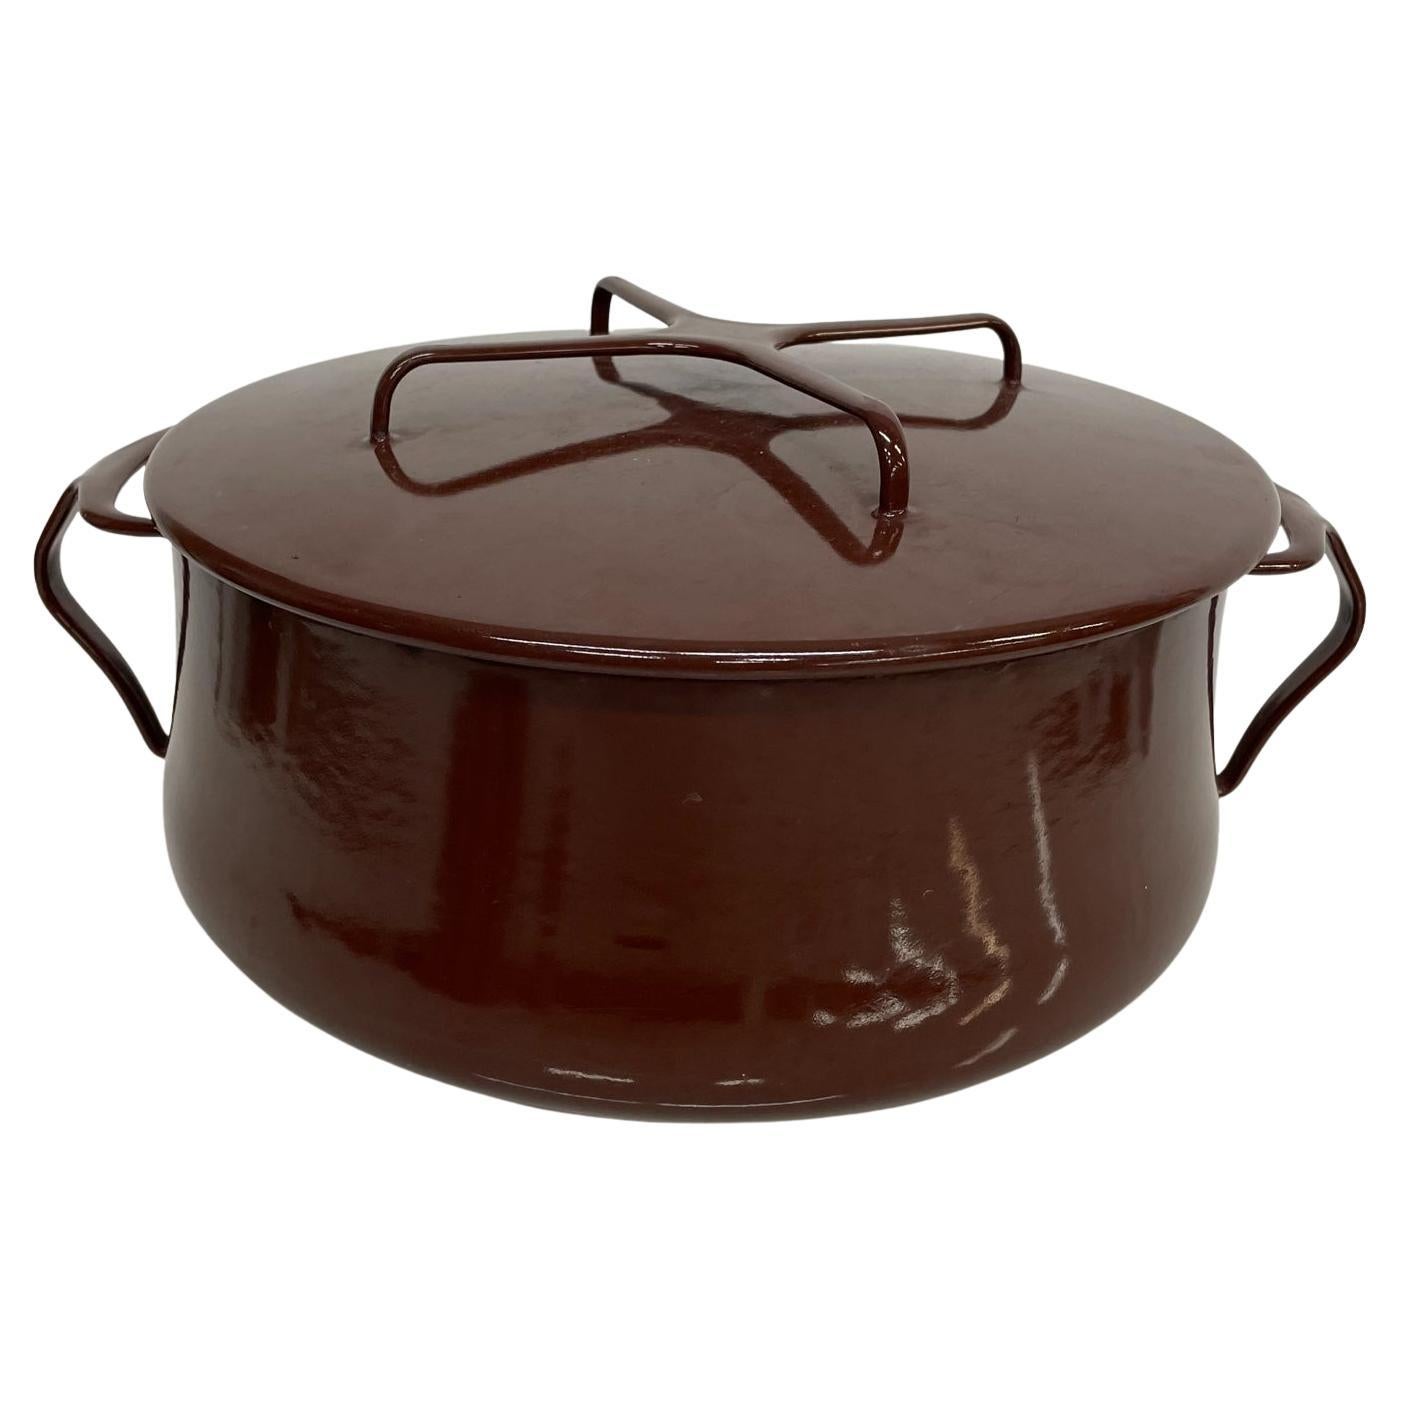 Vintage Dansk Brown Enamelware Casserole Covered Pot Trivet Top IHQ France 1956